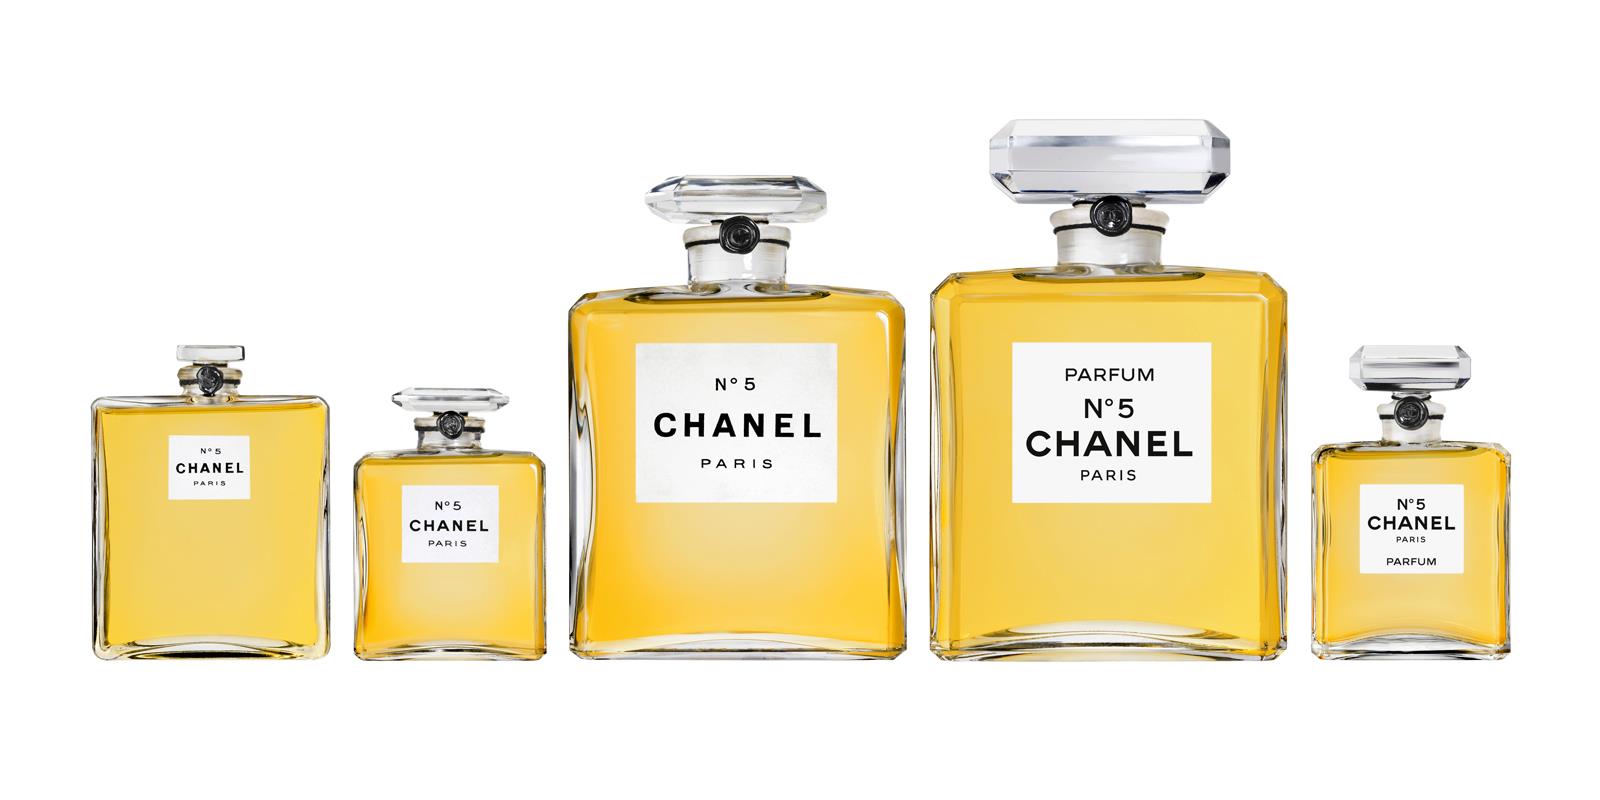 Chanel n°5, 90 anni di successo mondiale